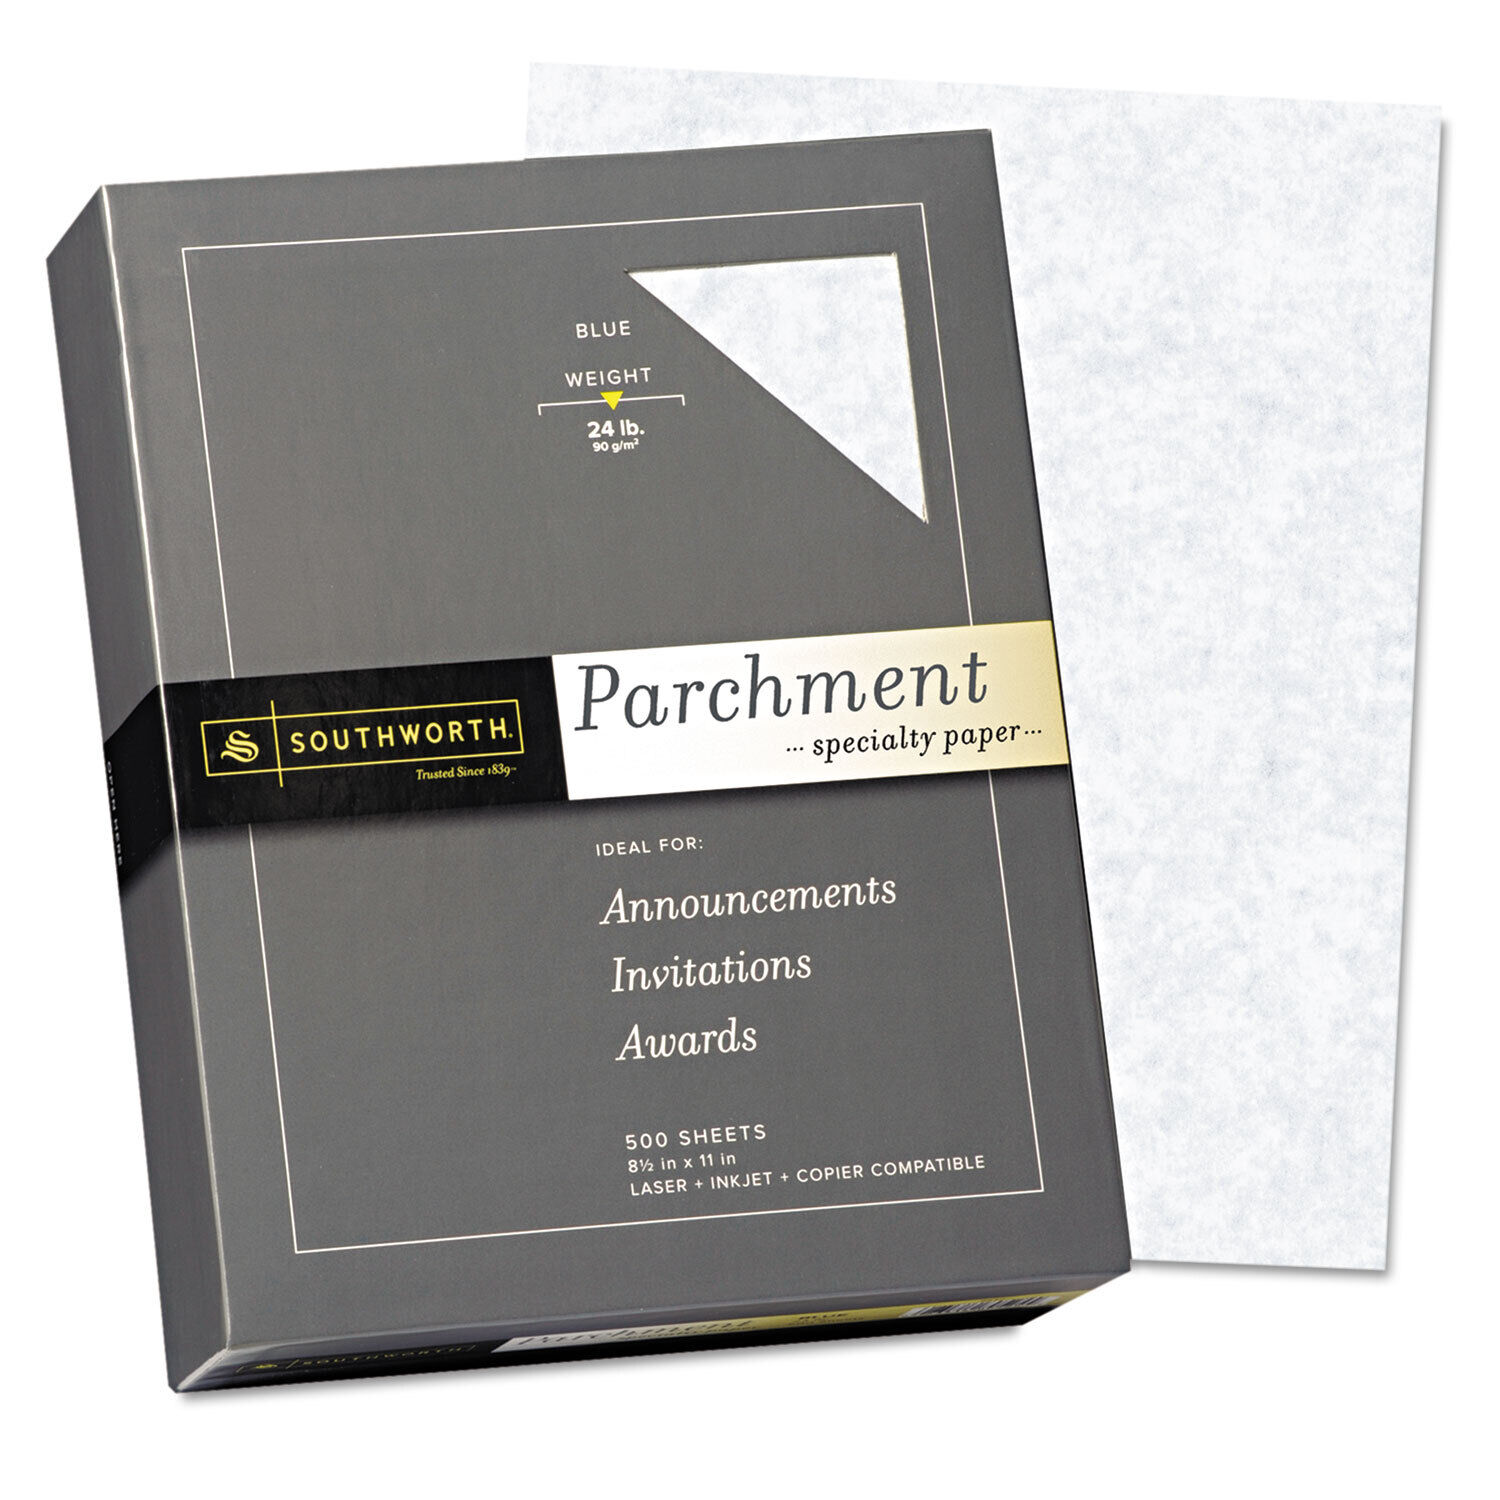 Southworth Parchment Specialty Paper Blue 24 lb. 8 1/2 x 11 500/Box 964C